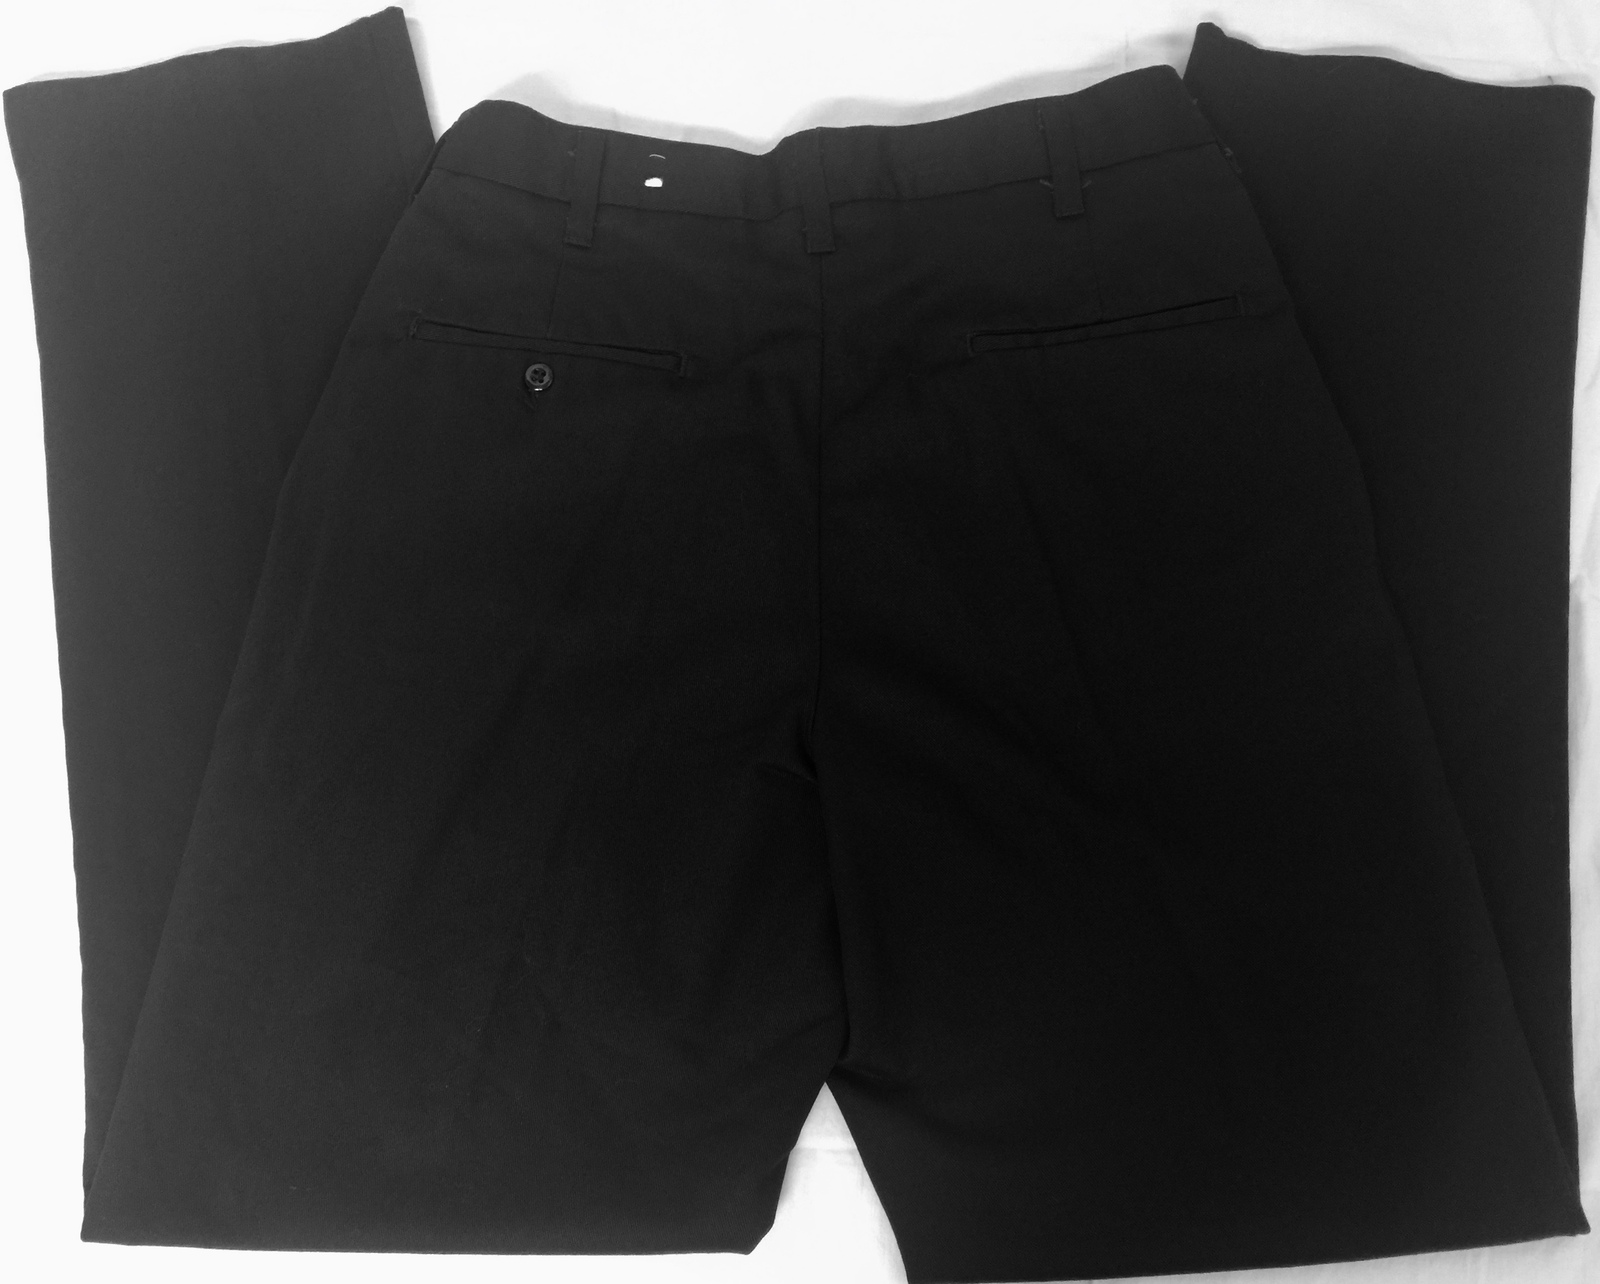 CINTAS Men's Black Cotton Flat Front Technician/Commercial Work Pants ...